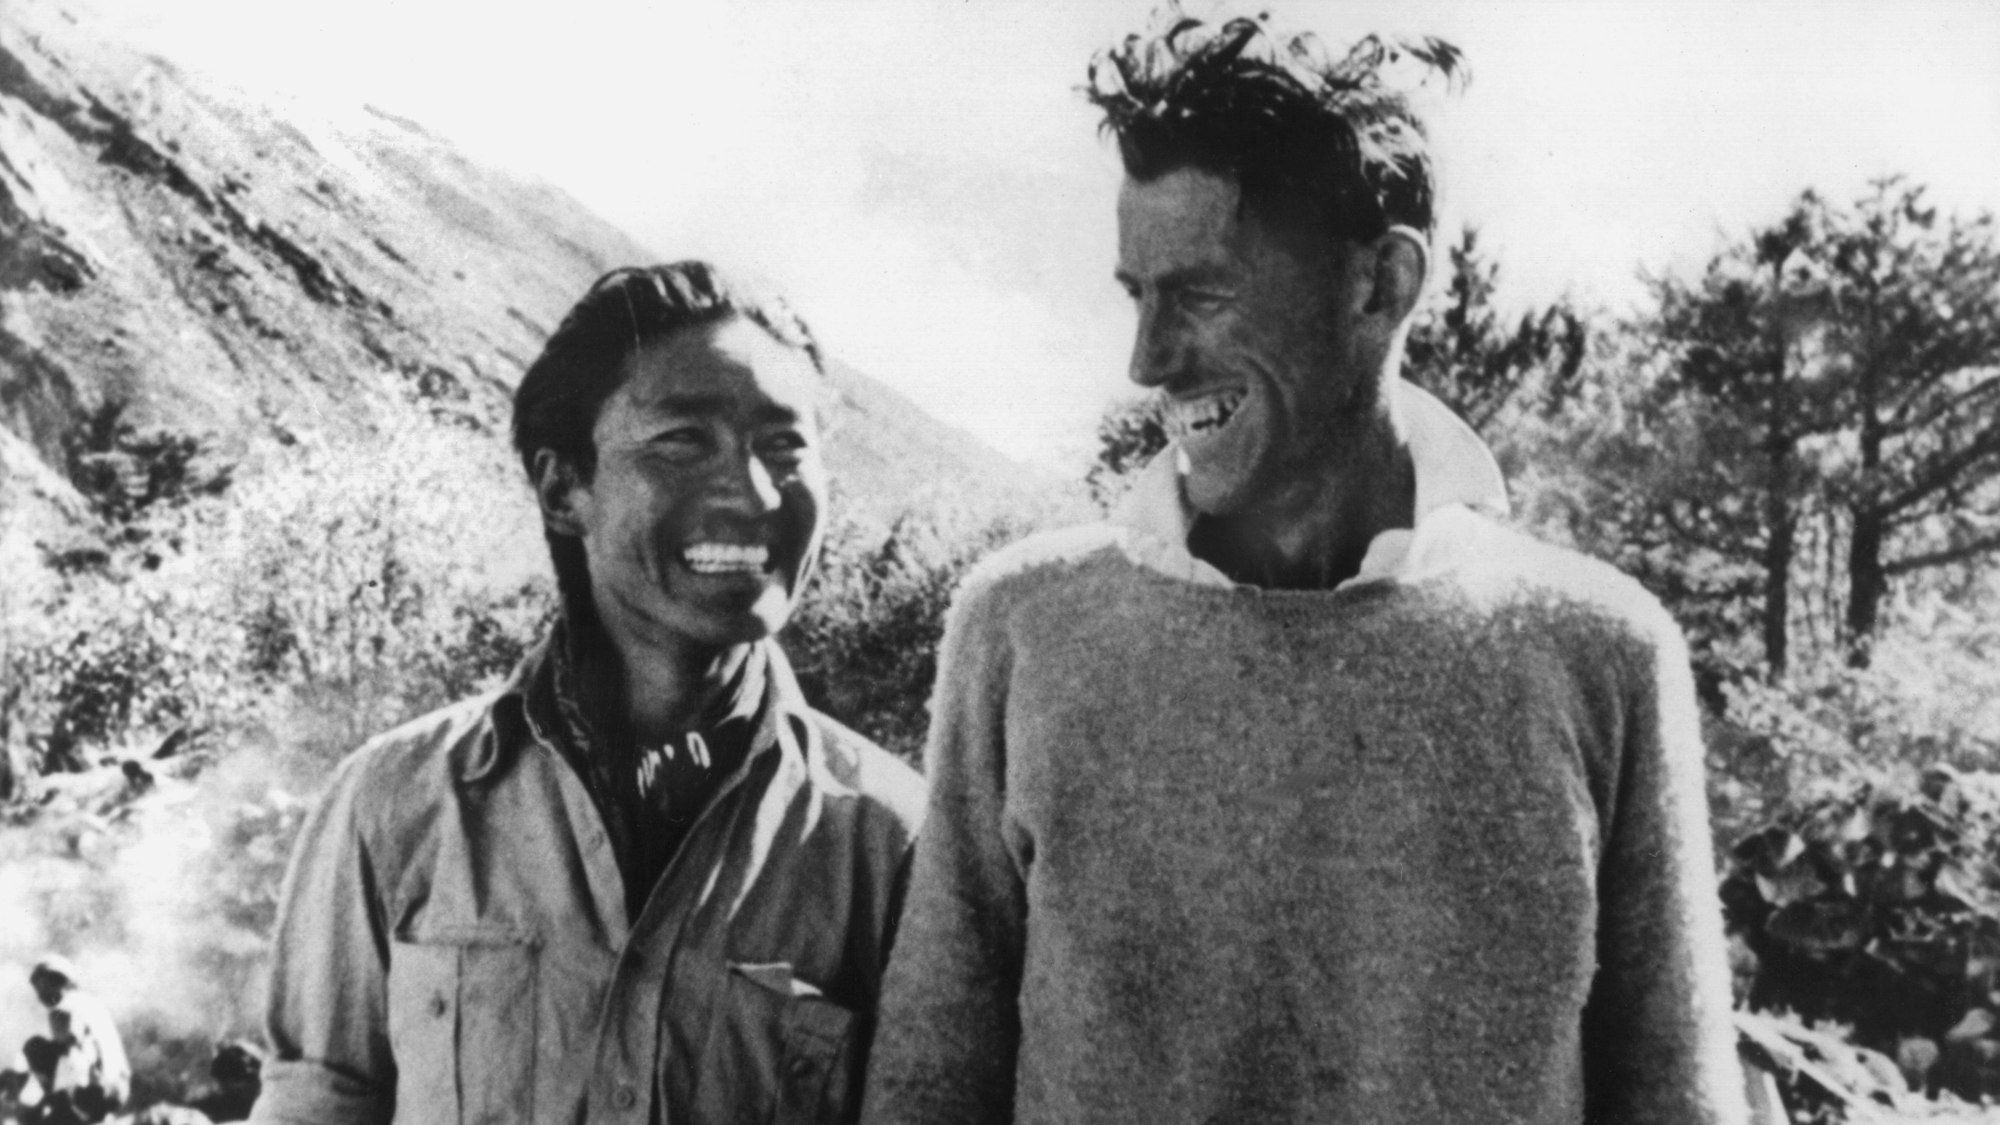 Der neuseeländische Bergsteiger Edmund Hillary (r) mit dem Sherpa Tenzing Norgay (auch "Tiger des Schnees" genannt), der ihn bei der Erstbesteigung des Mount Everest 1953 begleitete.